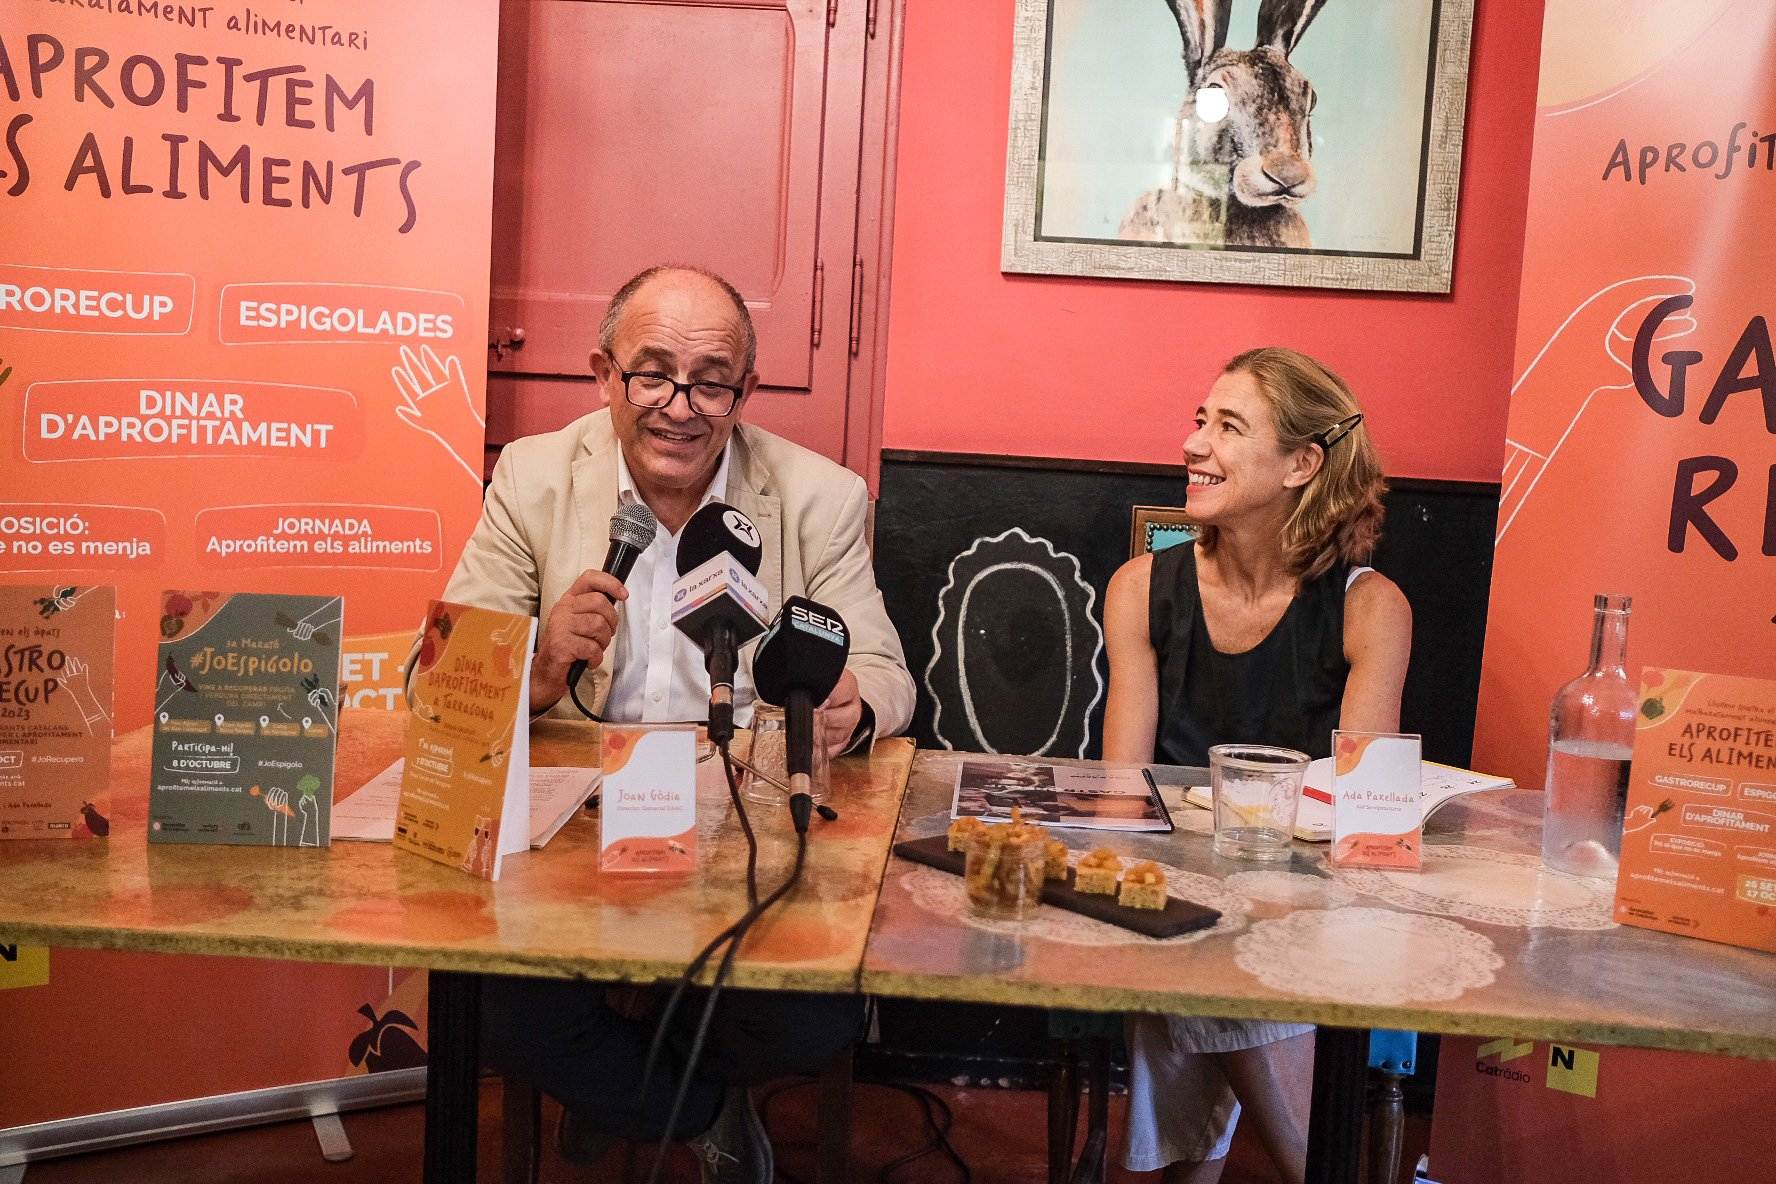 Catalunya se rebela contra el despilfarro alimentario: plataformas y restaurantes alzan la voz